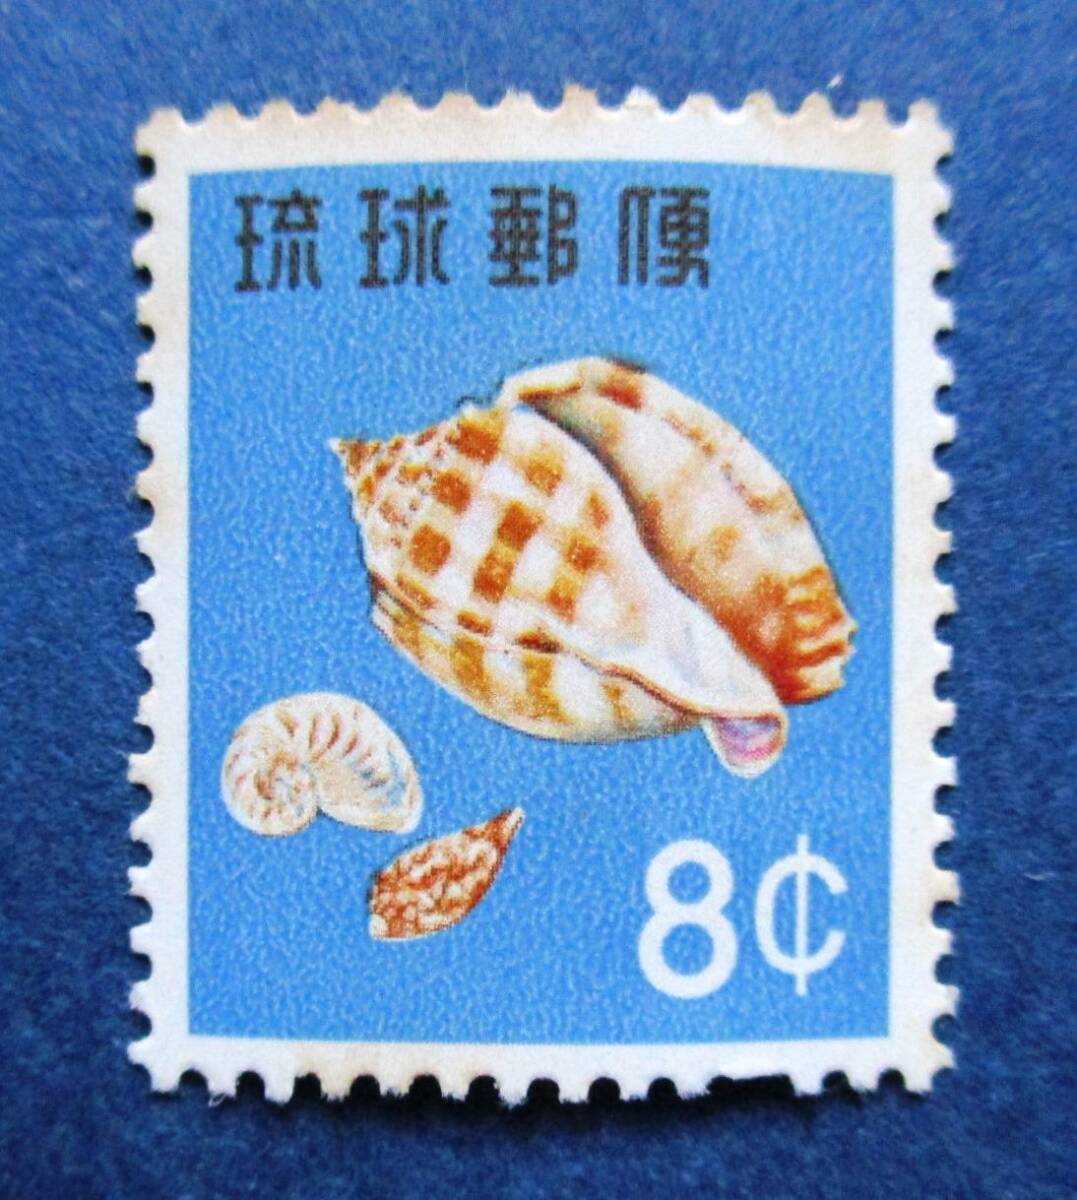 沖縄切手・琉球切手 第1次動植物シリーズ タイコガイ 8￠切手。 BB18 シミがあります。画像参照の画像1